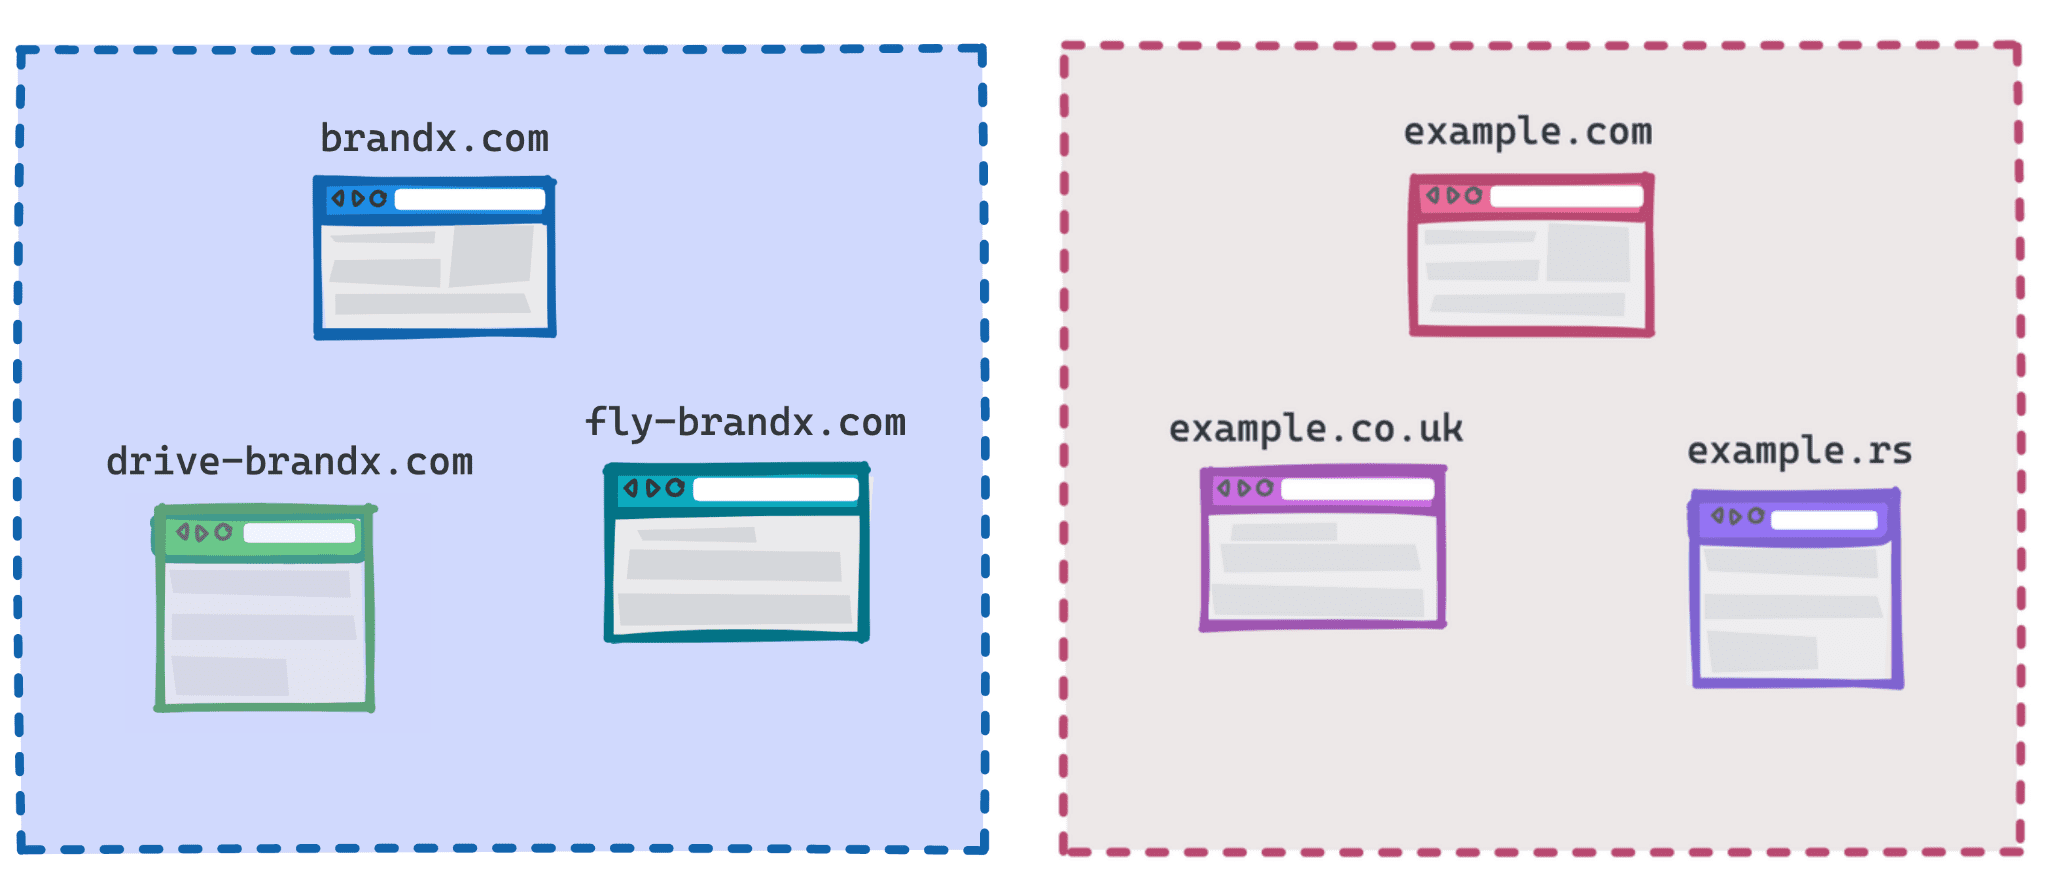 顯示 Brandx.com、fly-brandx.com 和 drive-brandx.com 為一個群組，以及 example.com、example.rs、example.co.uk 兩個組別的圖表。